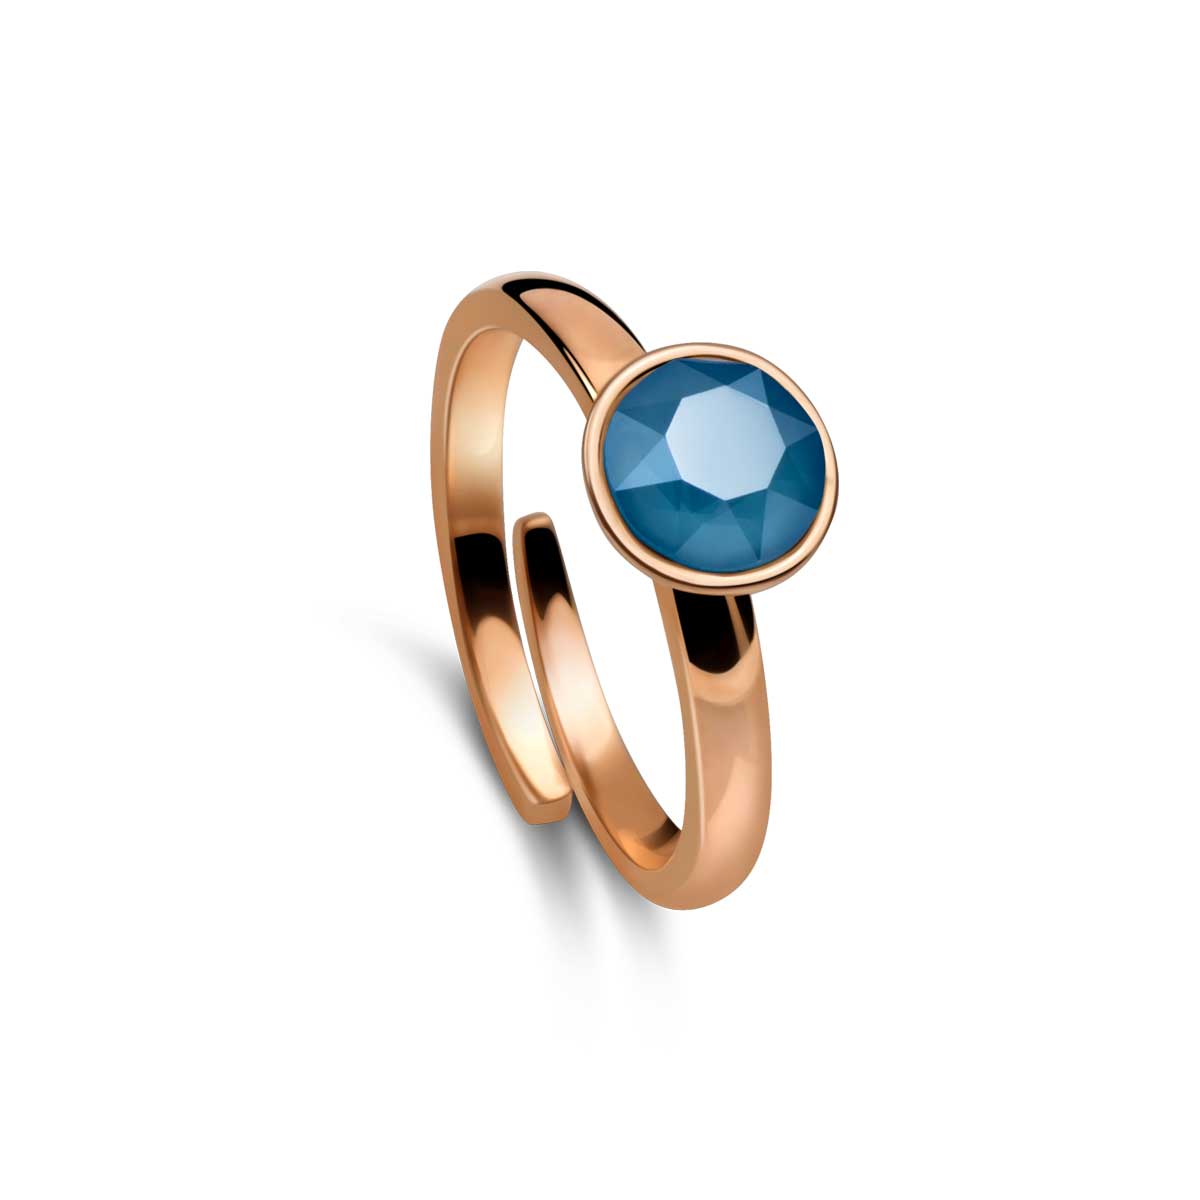 Ring 925 Silber blau verstellbar#oberflache_rosevergoldet